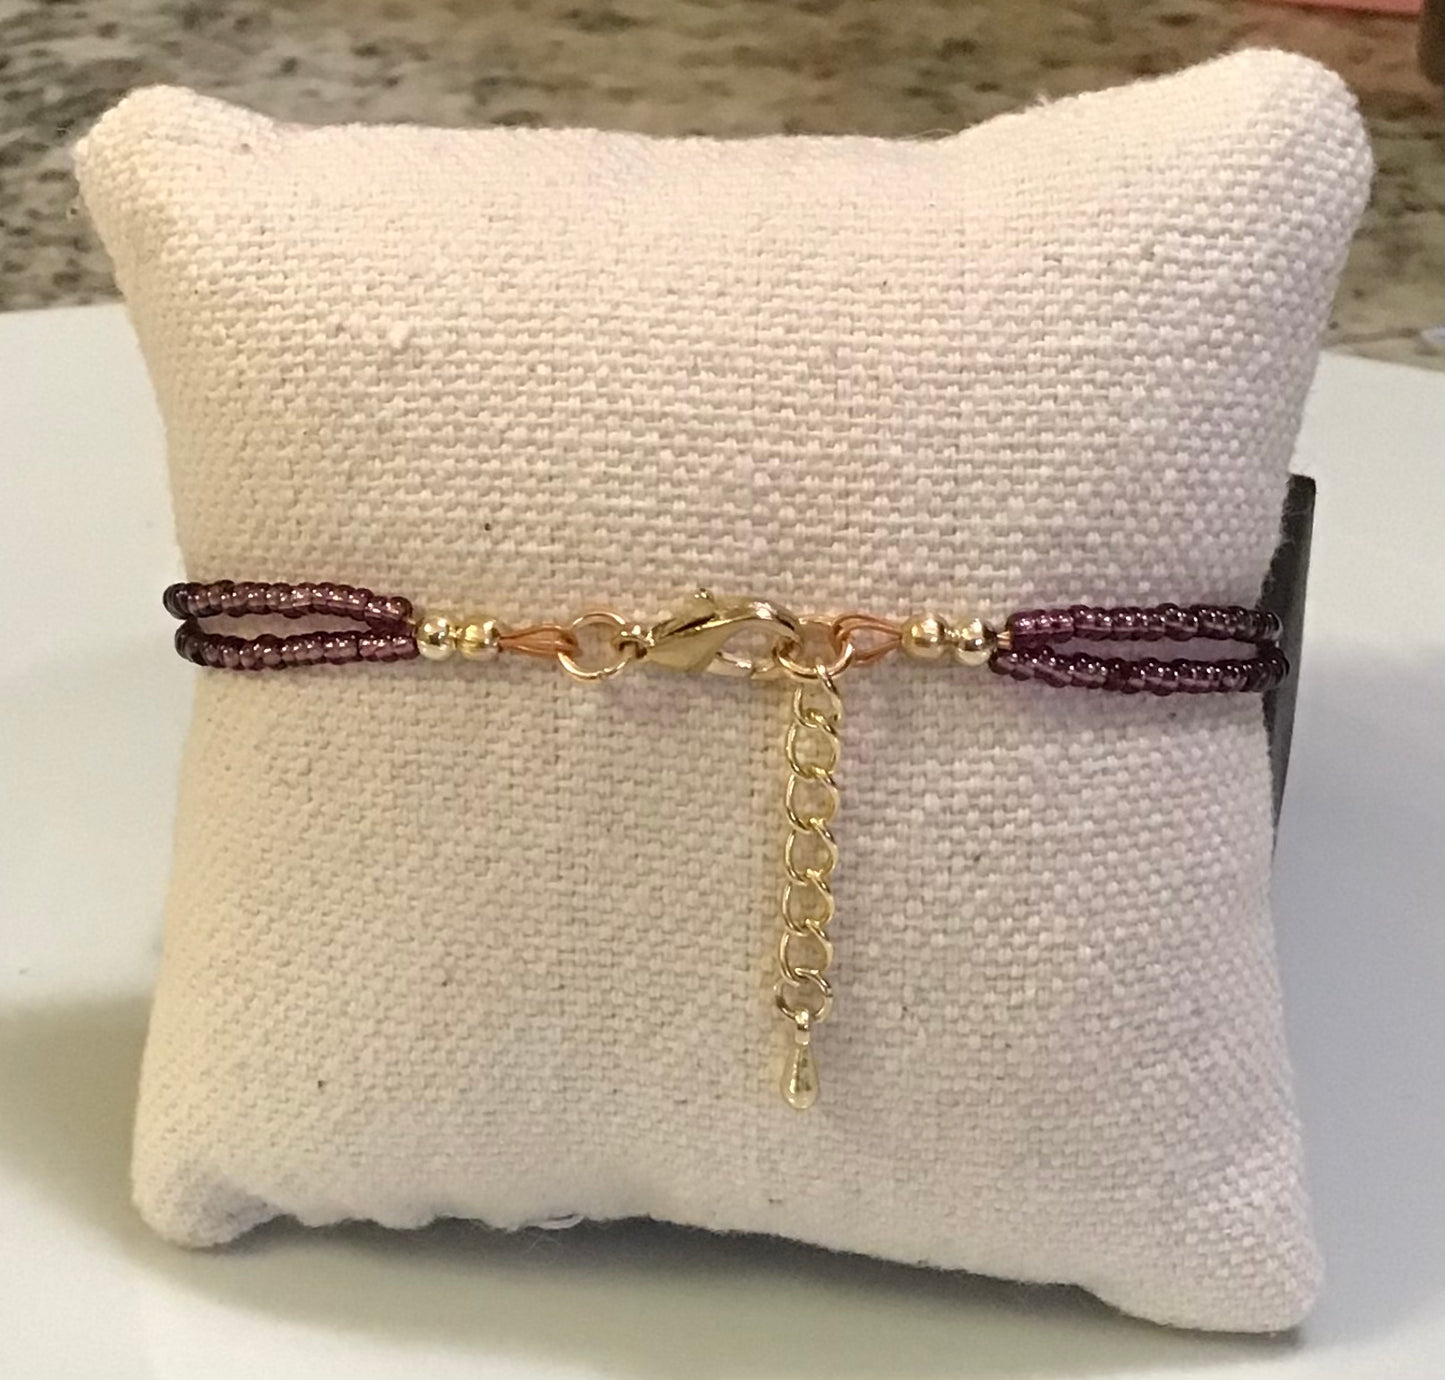 Gorgeous Double Strand Purple Bracelet